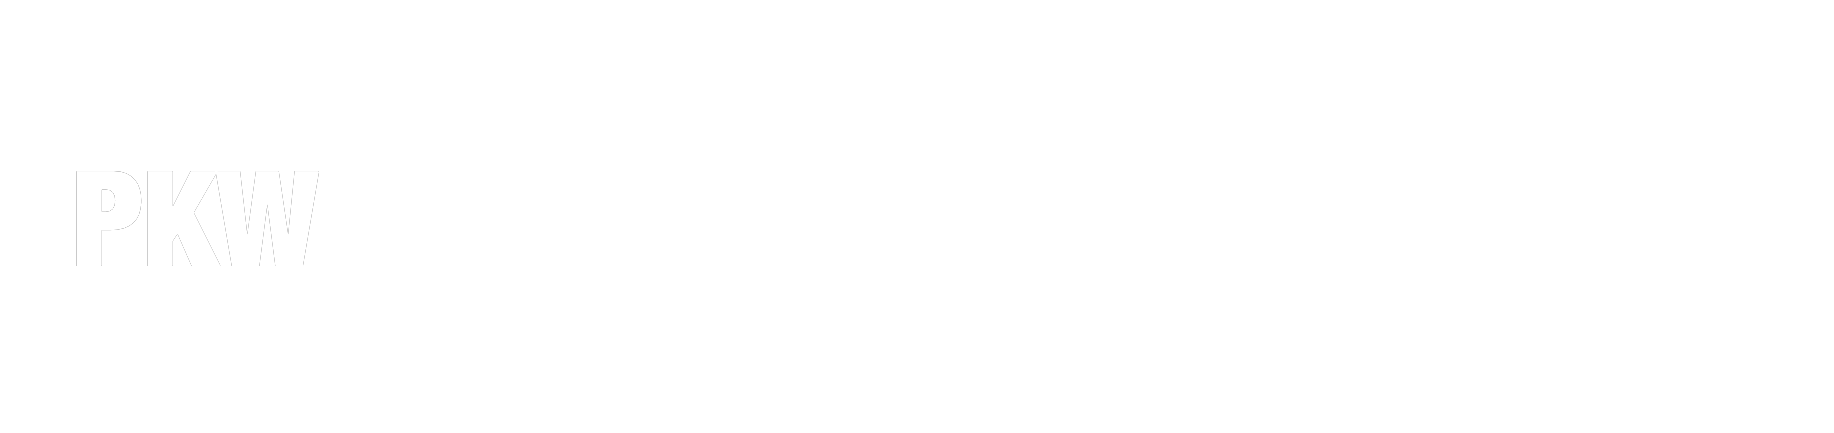 Paul K White